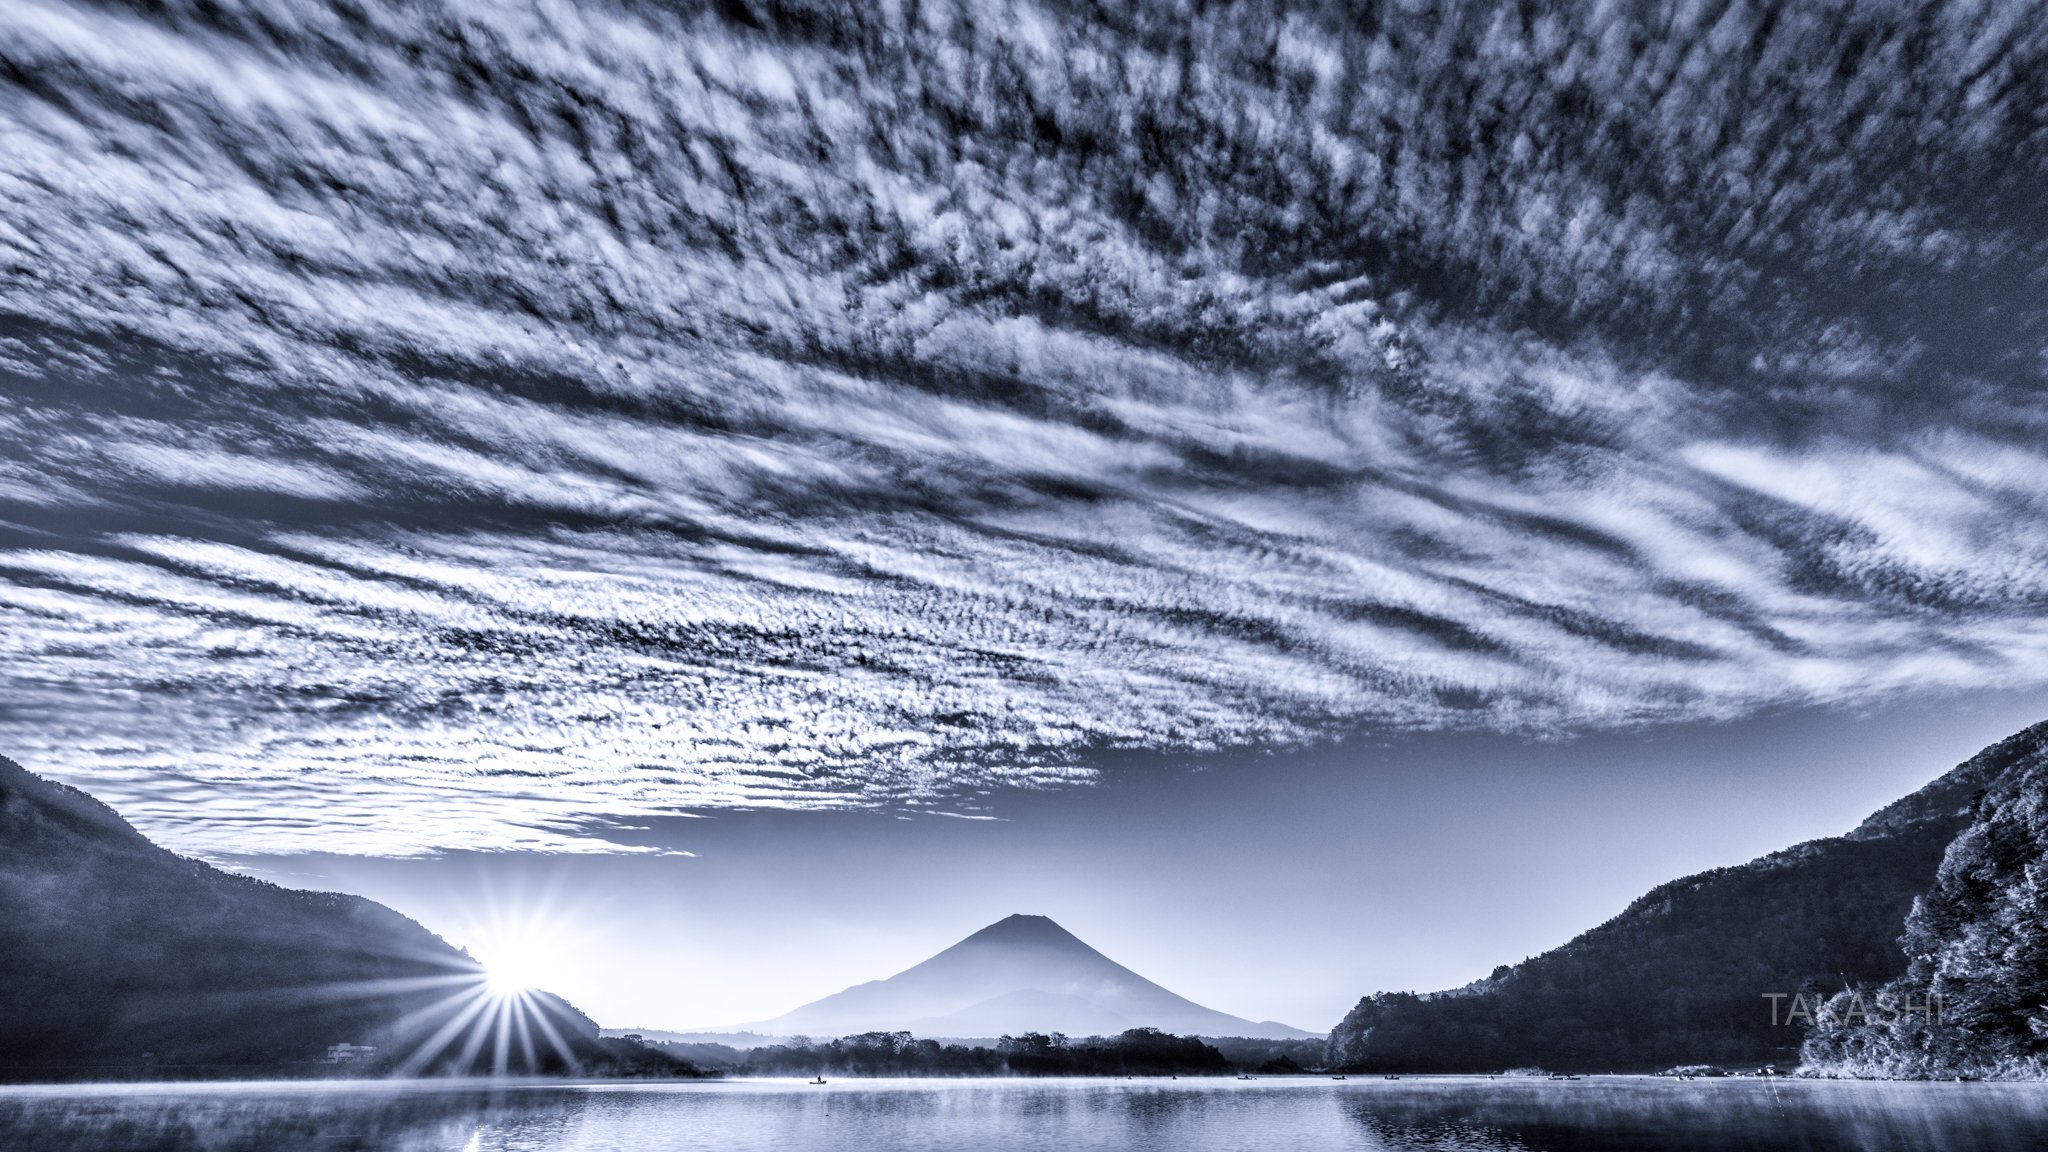 Fuji,Japan,mountain,clouds,lake,water,sunrise,sunshine, Takashi